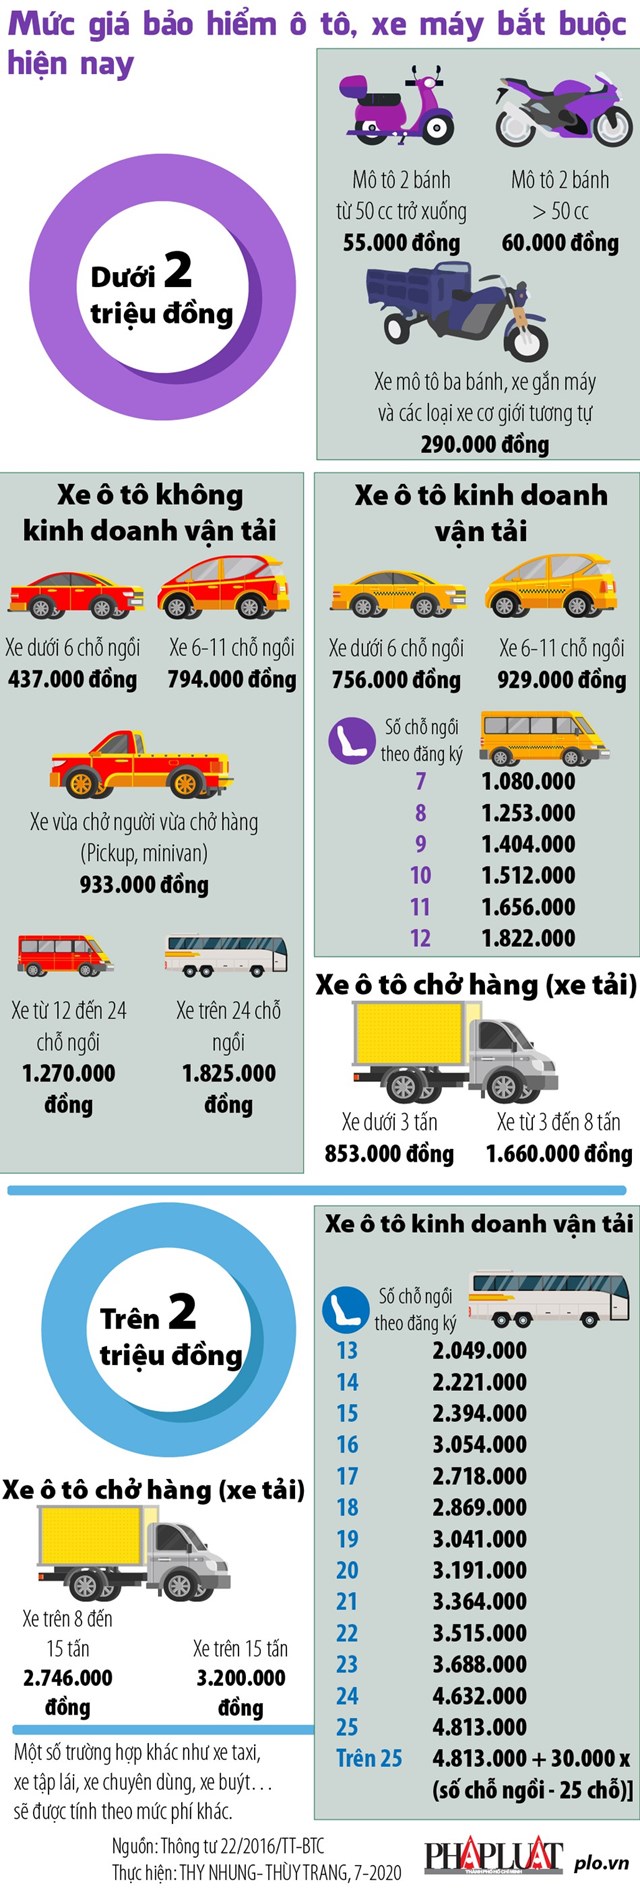 [Infographics] Mức giá bảo hiểm ô tô, xe máy bắt buộc hiện nay - Ảnh 1